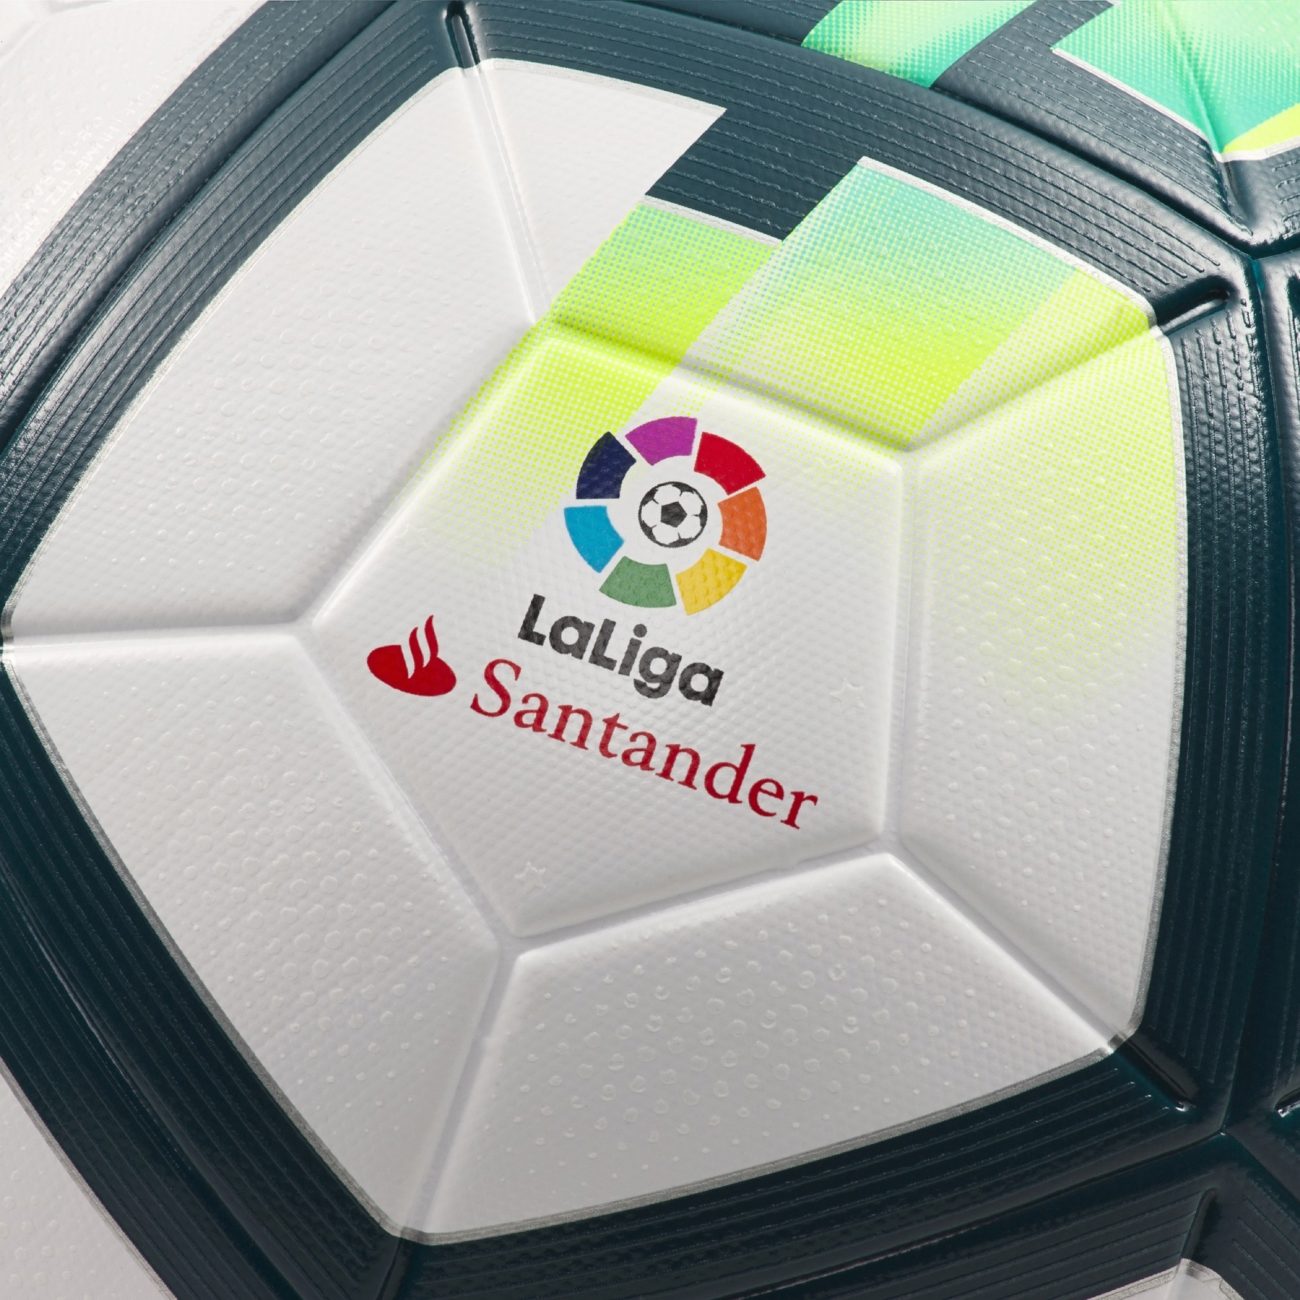 Así el balón de la Liga 2017-2018 - Nike presenta el balón Ordem V de LaLiga... | MARCA.com